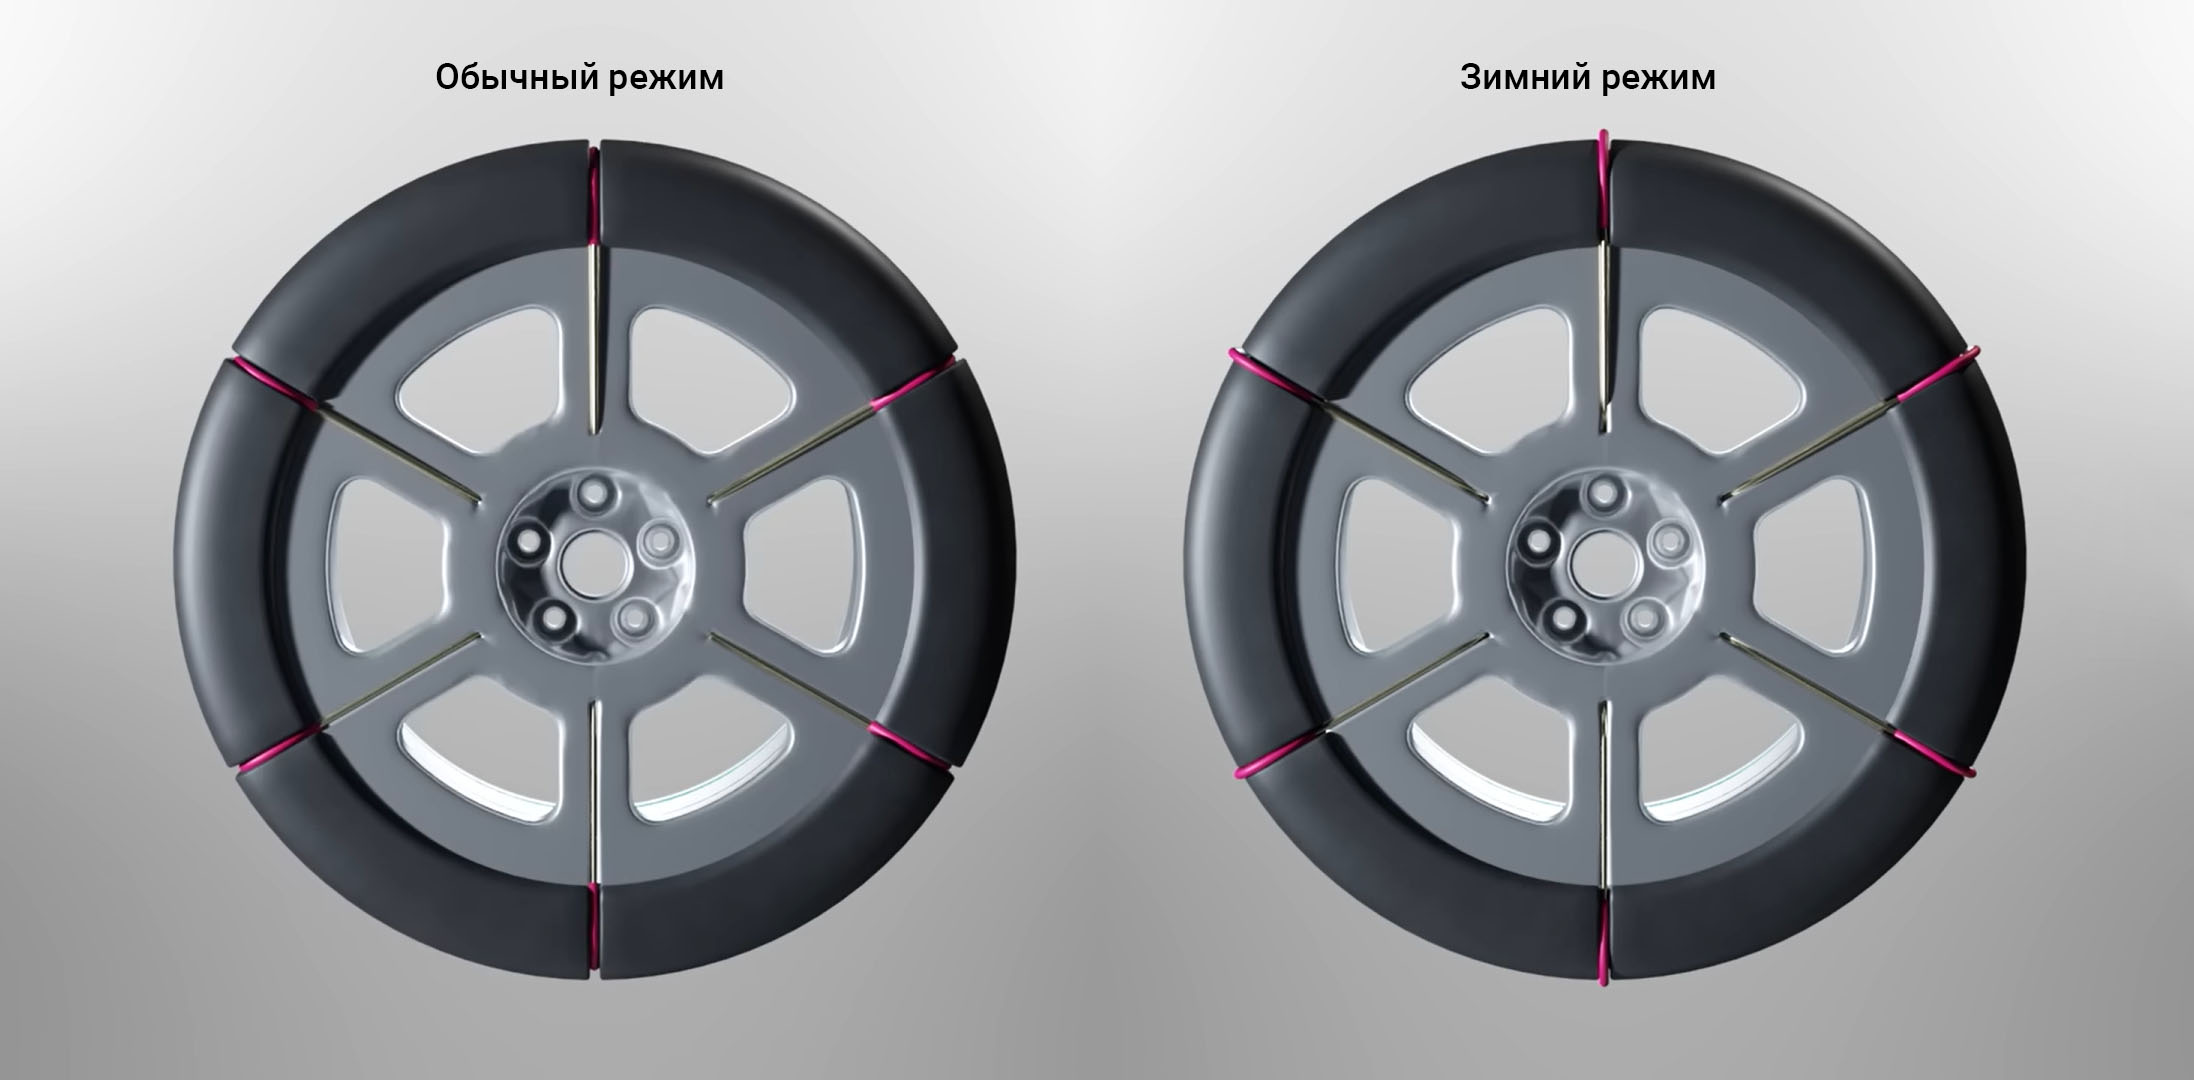 Зимние шины будущего для электромобилей от Hyundai Motor и Kia